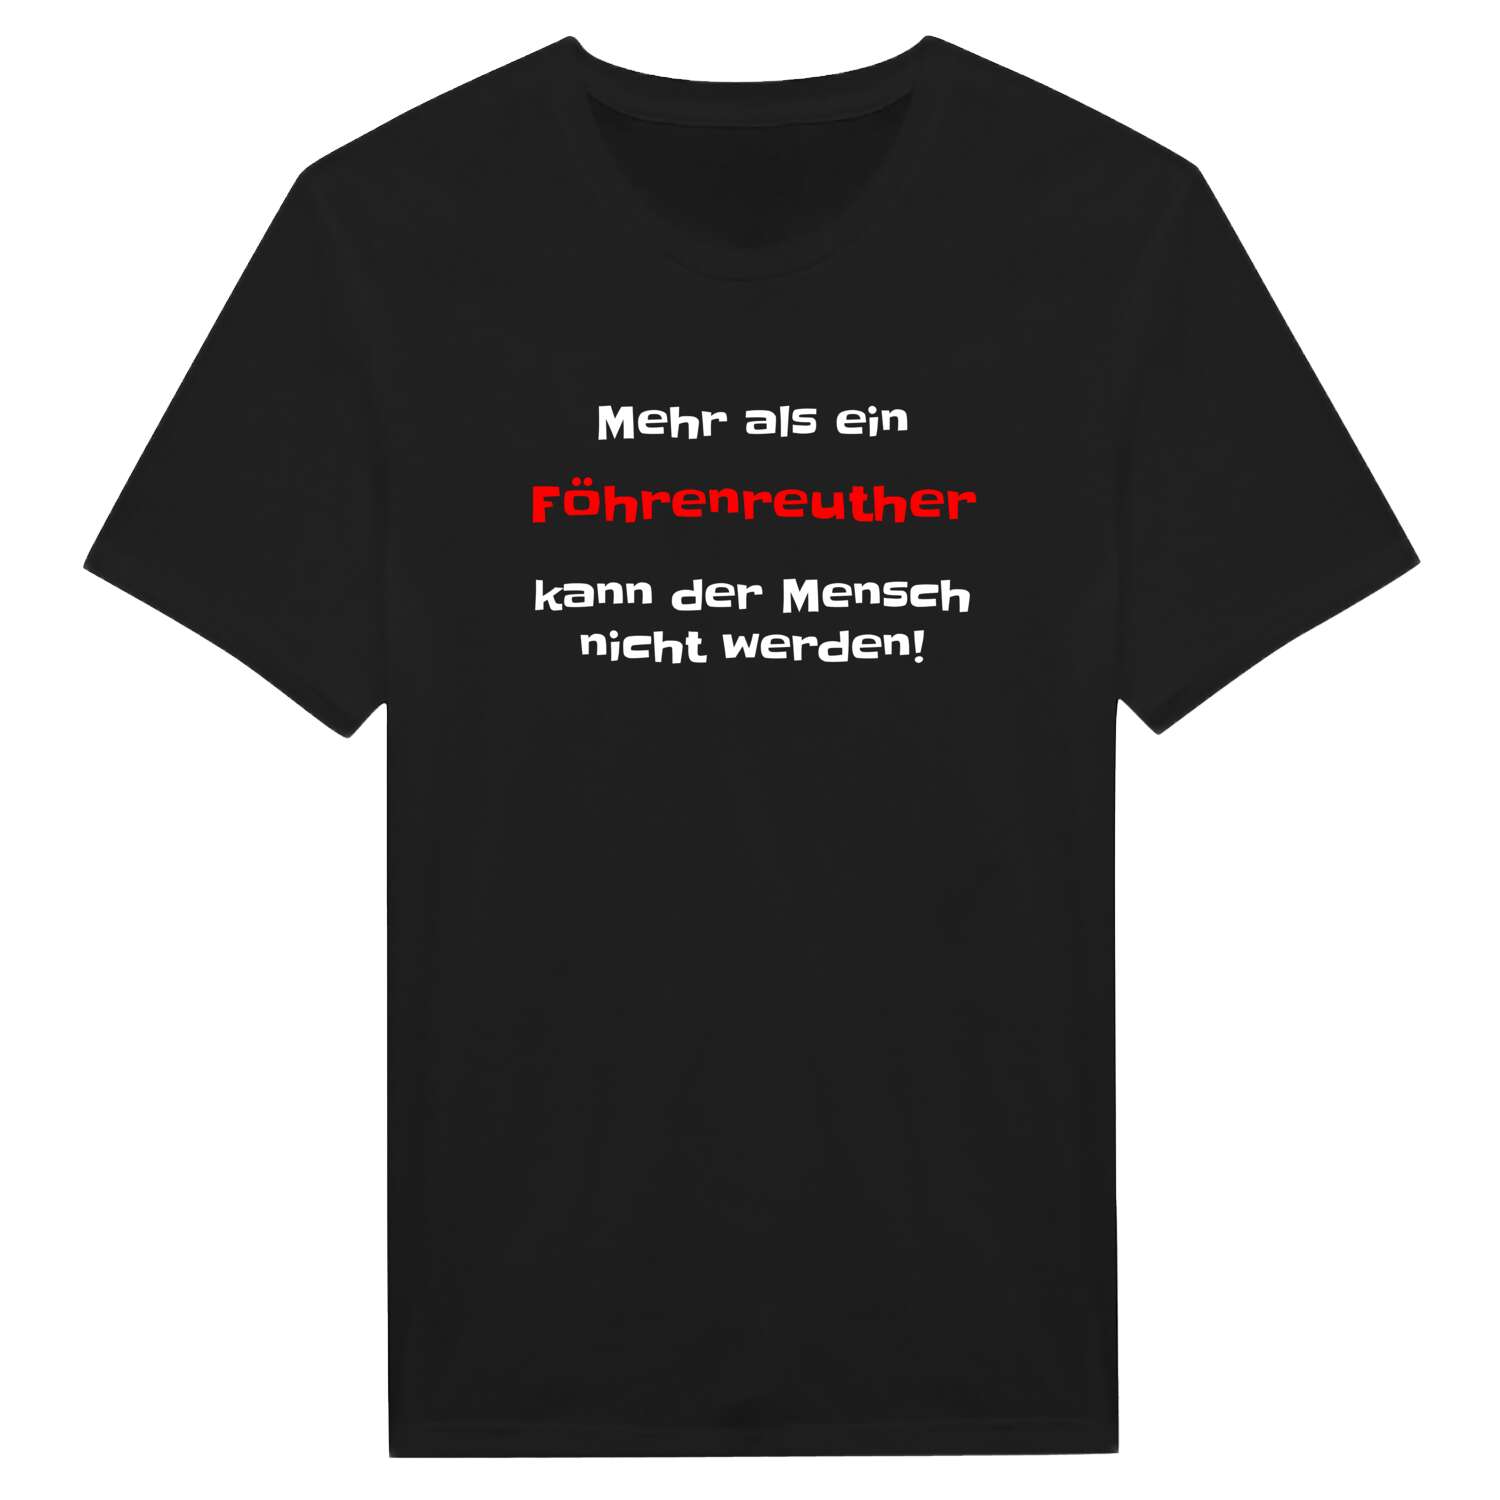 Föhrenreuth T-Shirt »Mehr als ein«